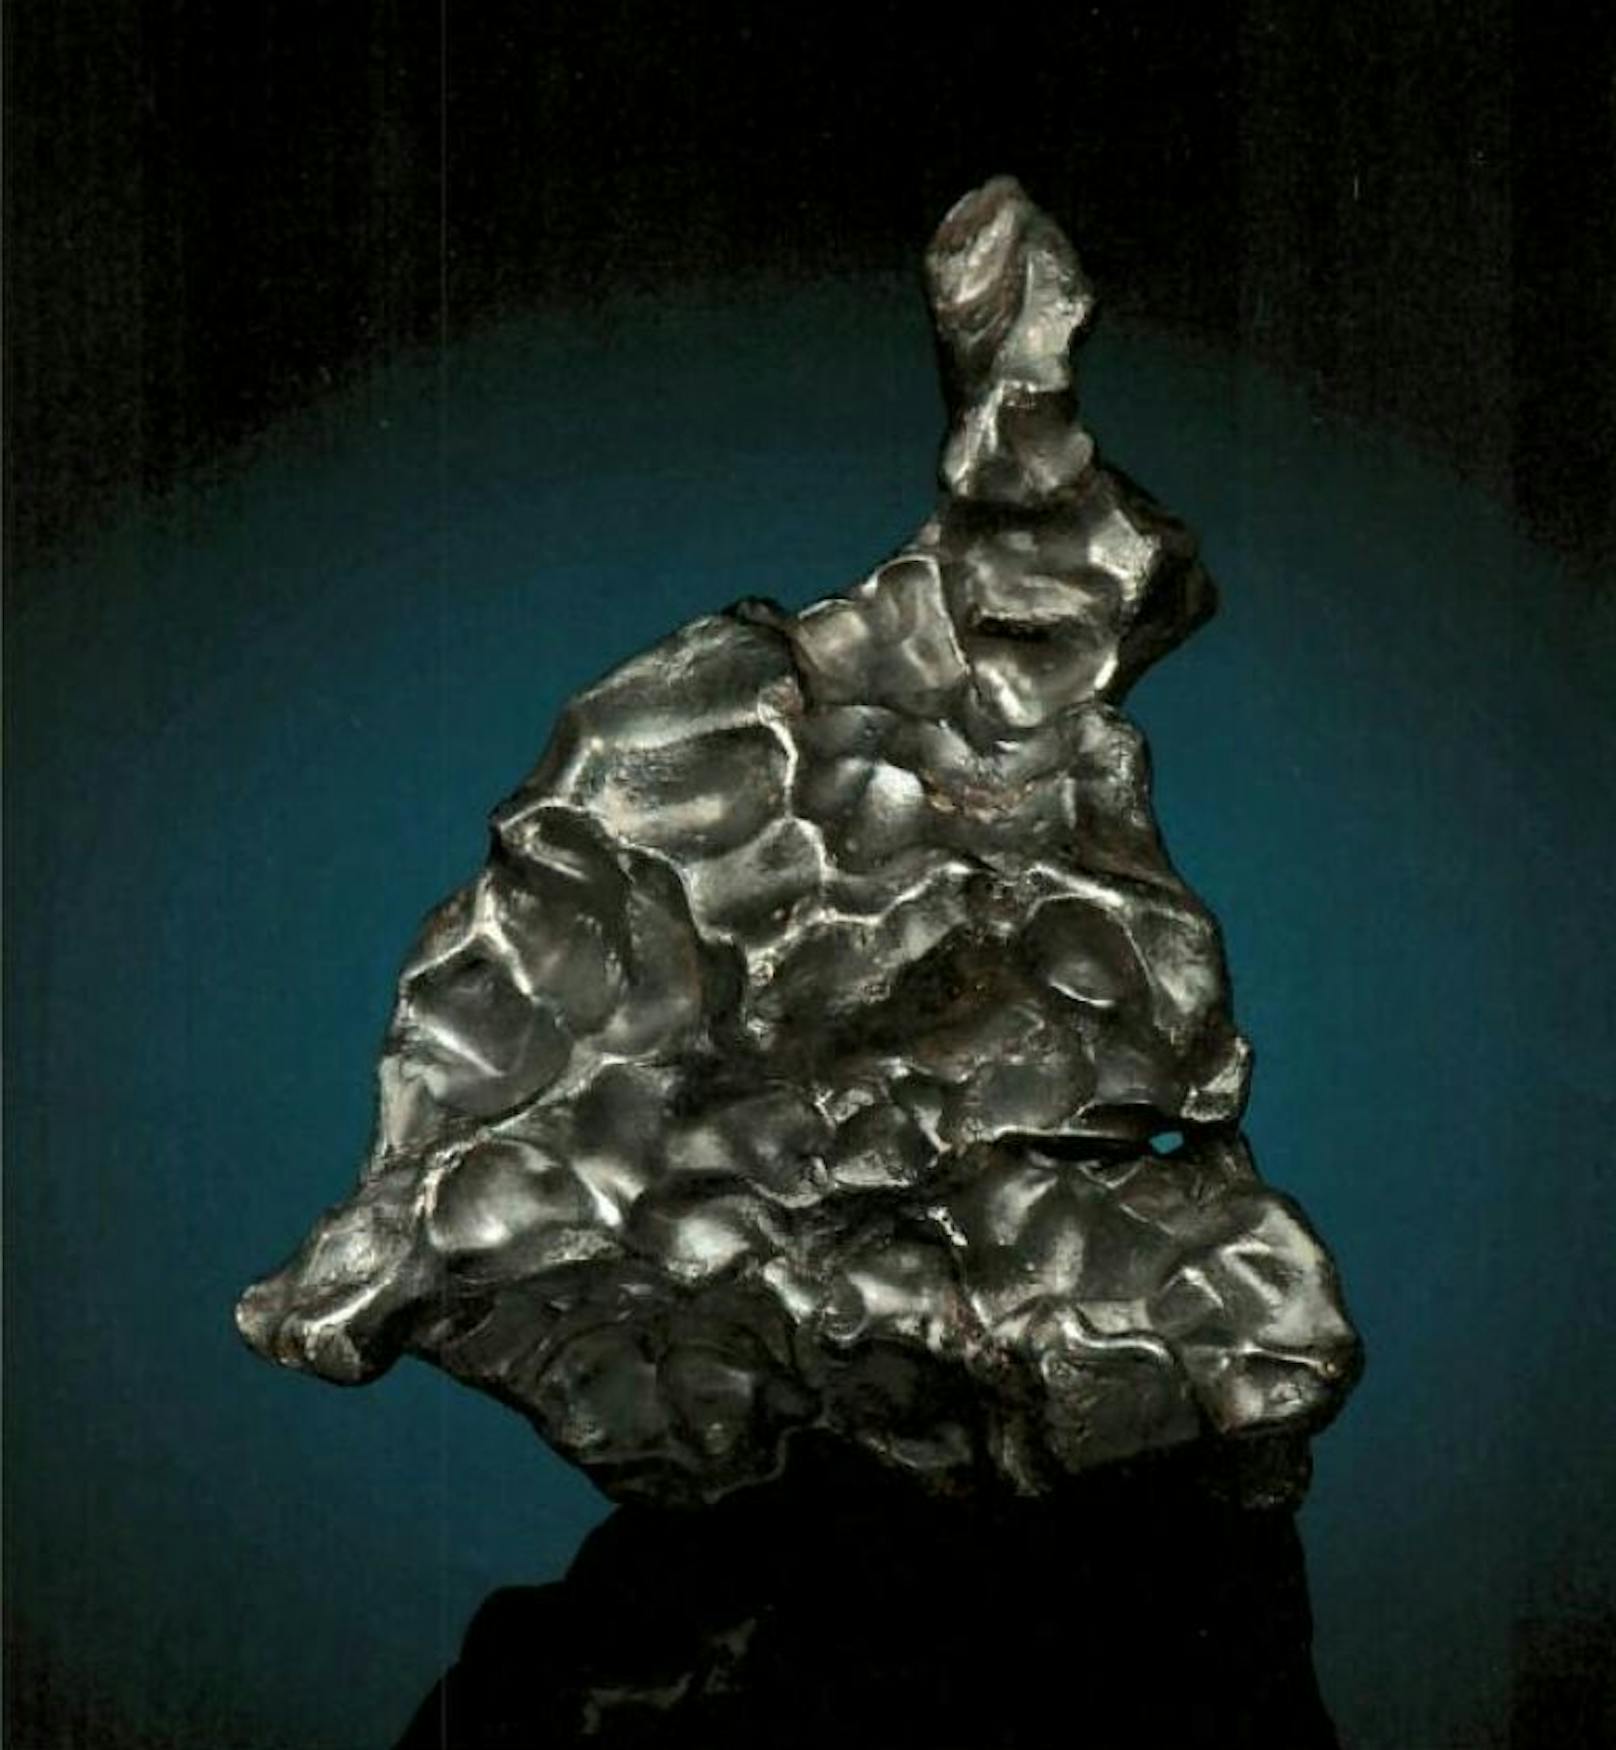 In Wien wurde dieser Meteorit gestohlen. Wert: 12.000 Euro!